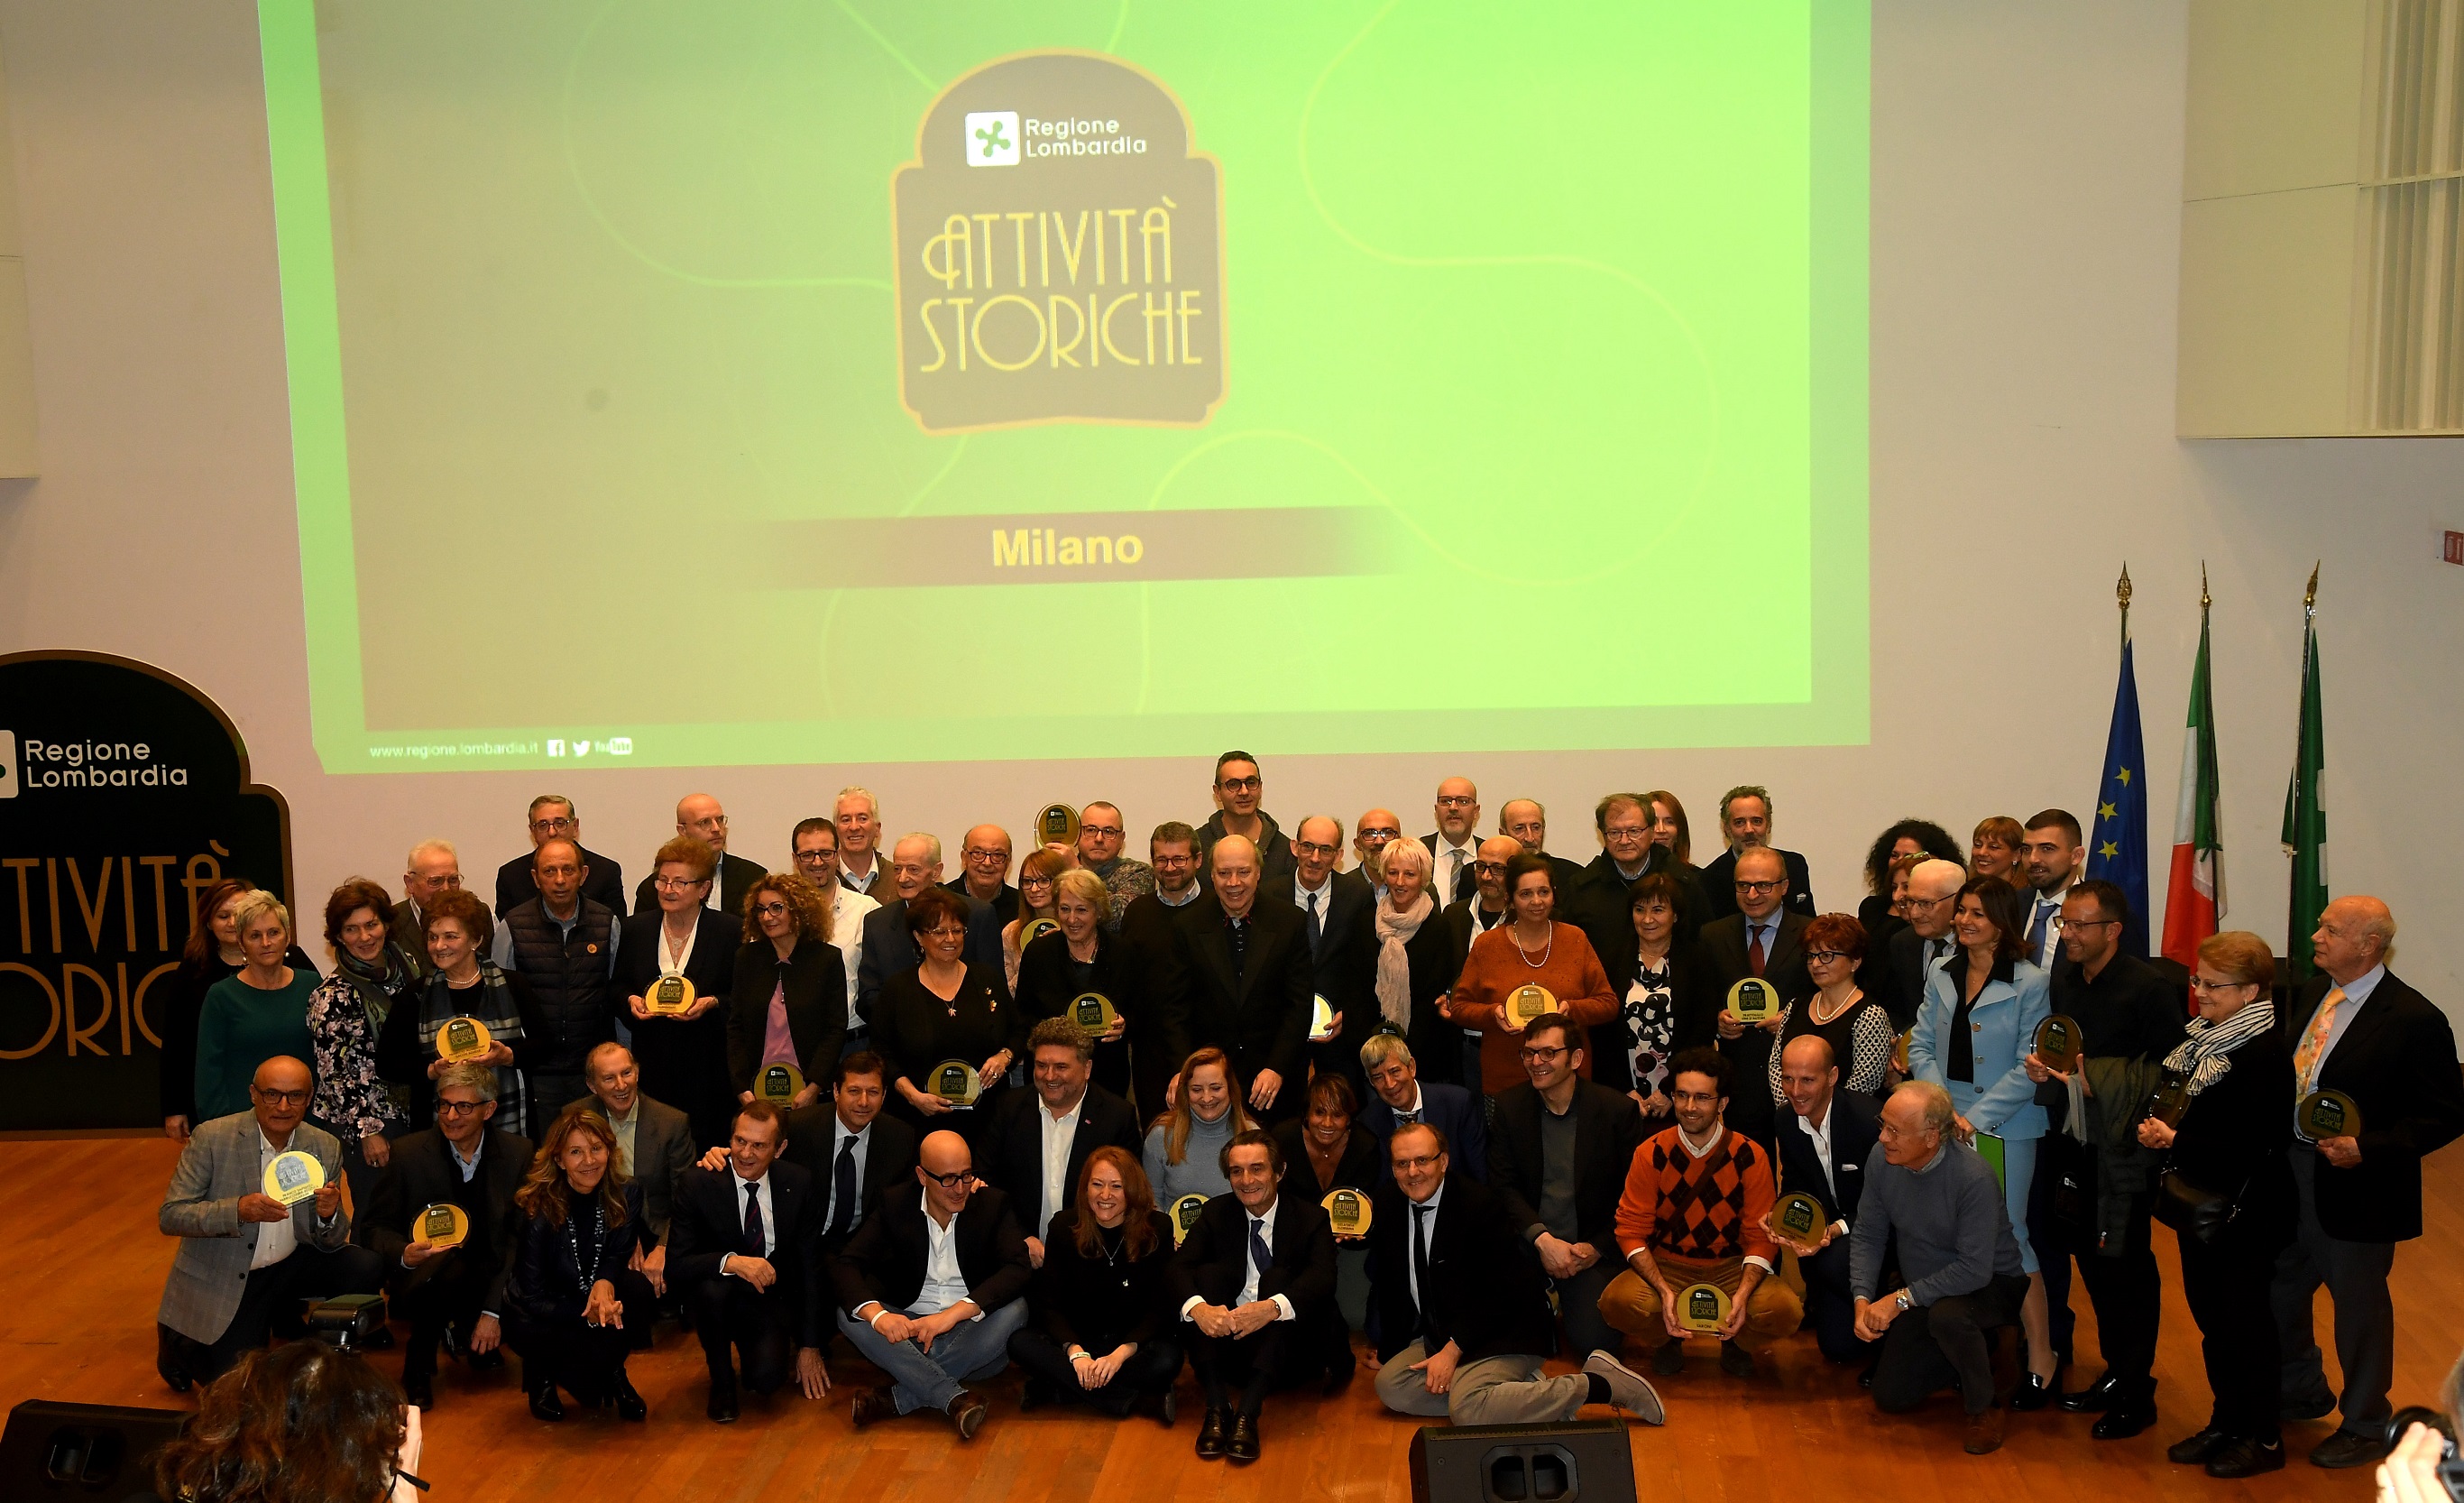 Milano premiazione attività storiche 2019